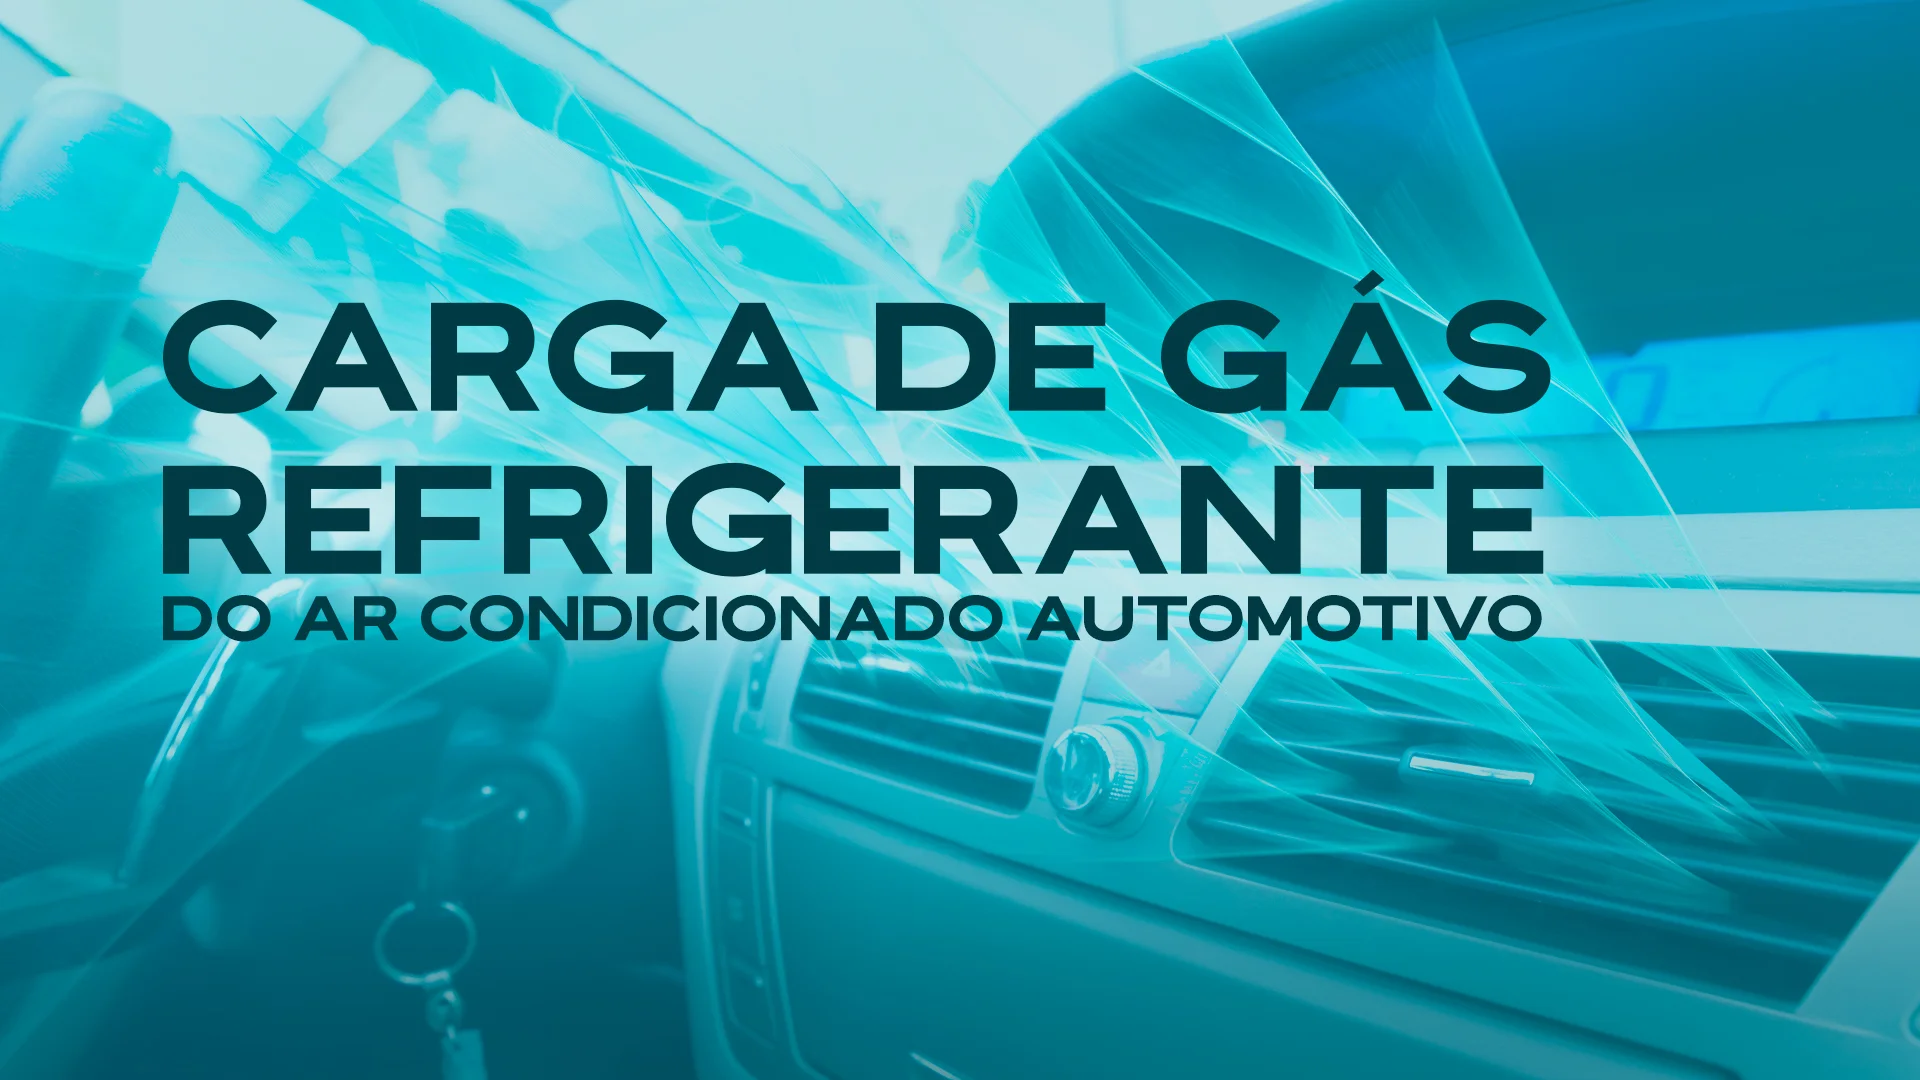 Carga de Gás Refrigerante do Ar Condicionado Automotivo